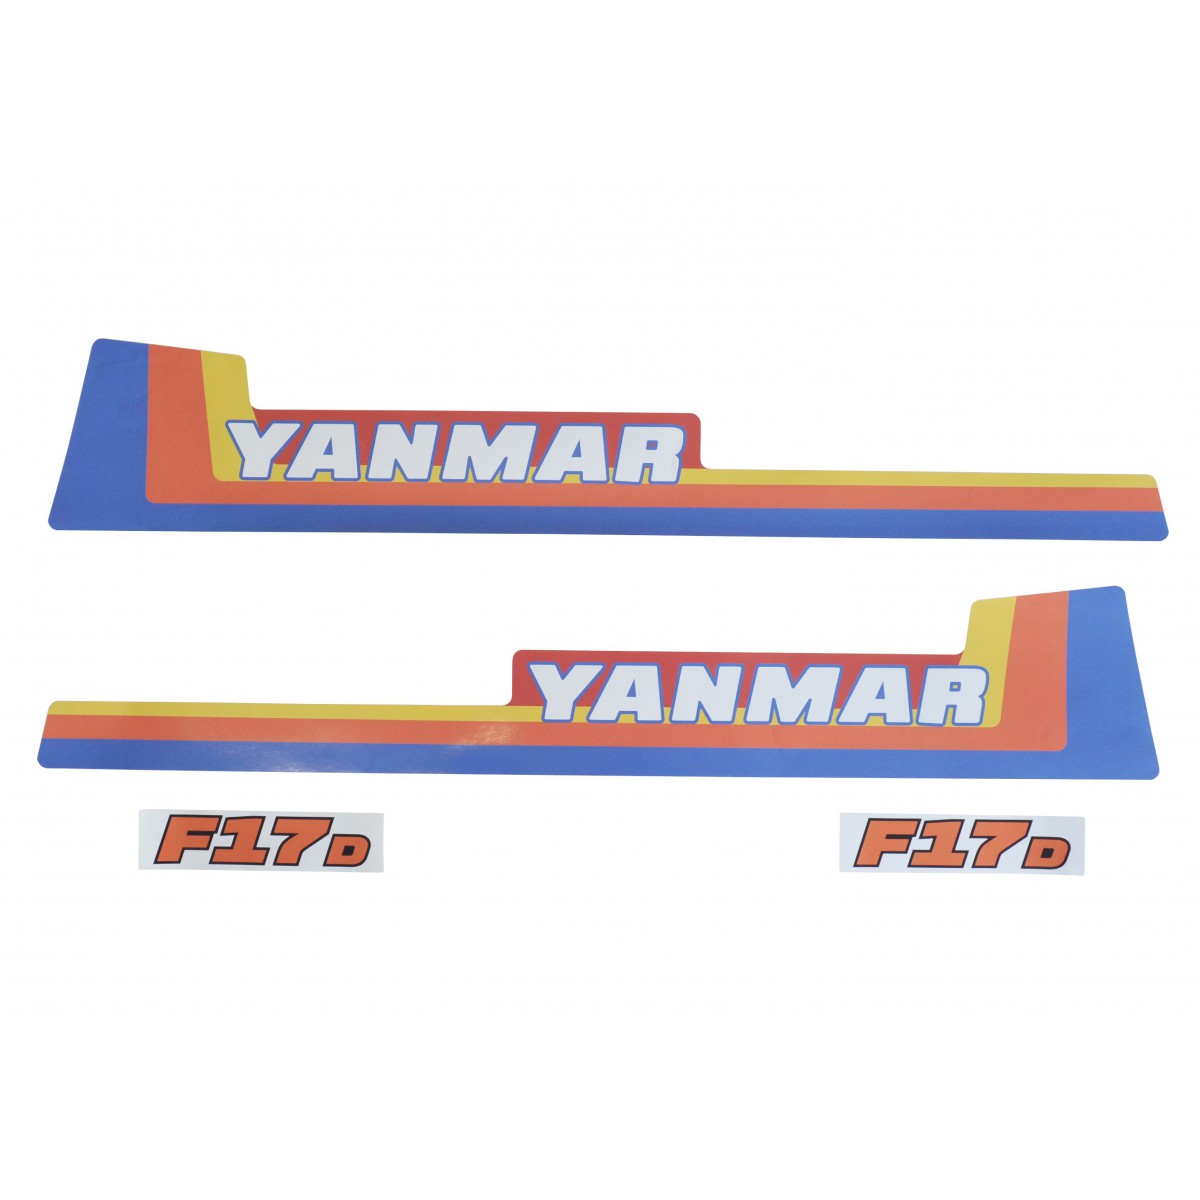 Naklejki Yanmar F17D